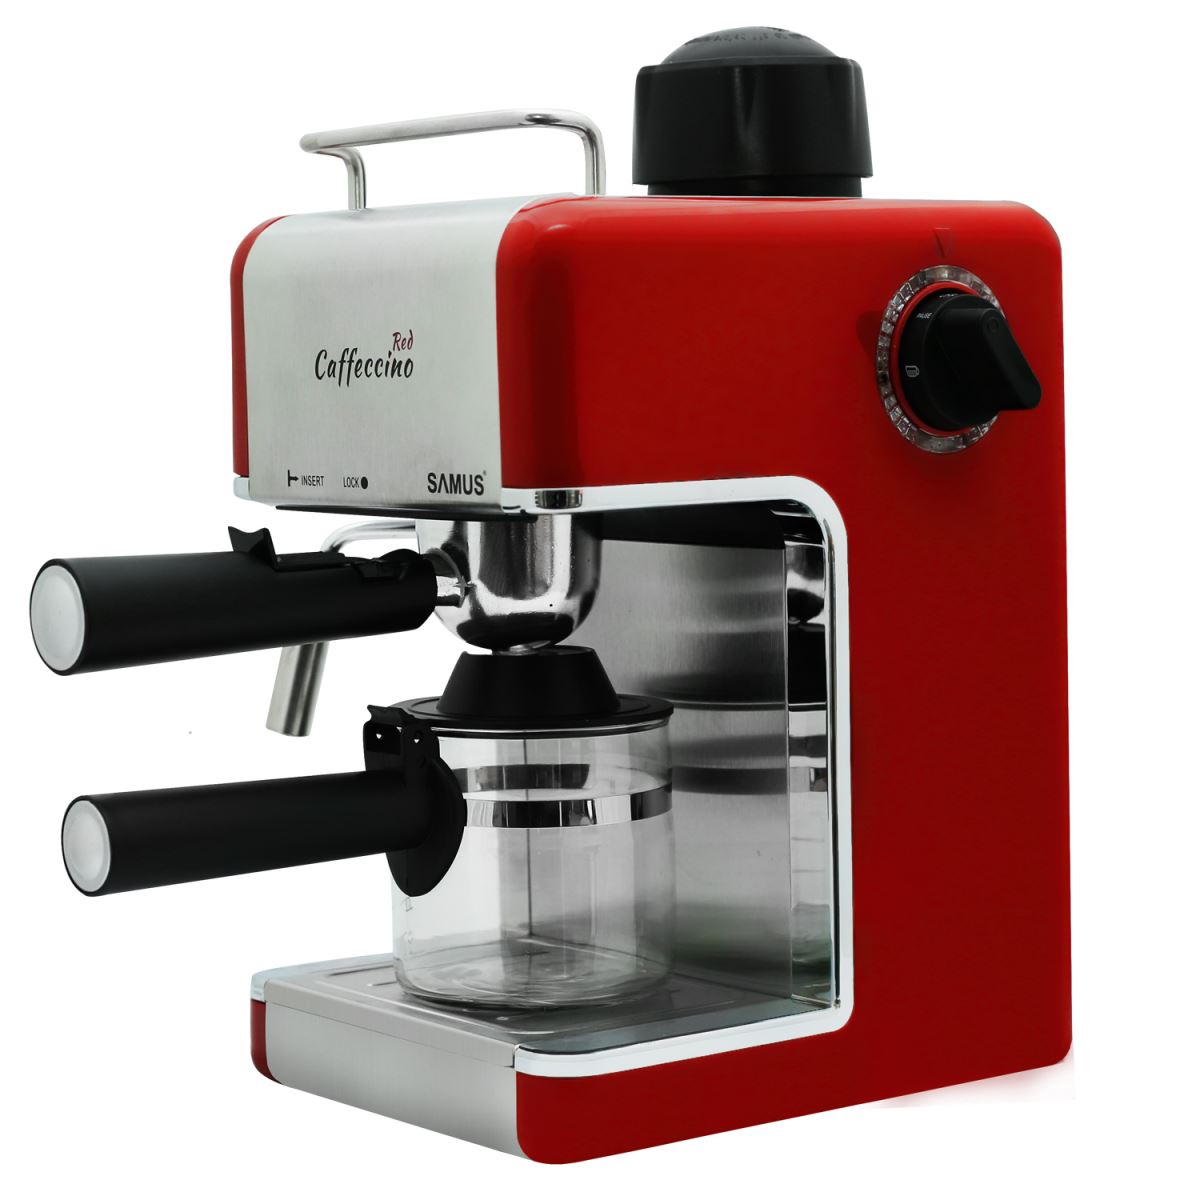 Espressor Samus Caffeccino Red, 3.5 bari, Rezervor 0.24 L, Capacitate 4 ceşti, Filtru inox, Duză cappuccino, Carafă gradată, Rosu/Inox